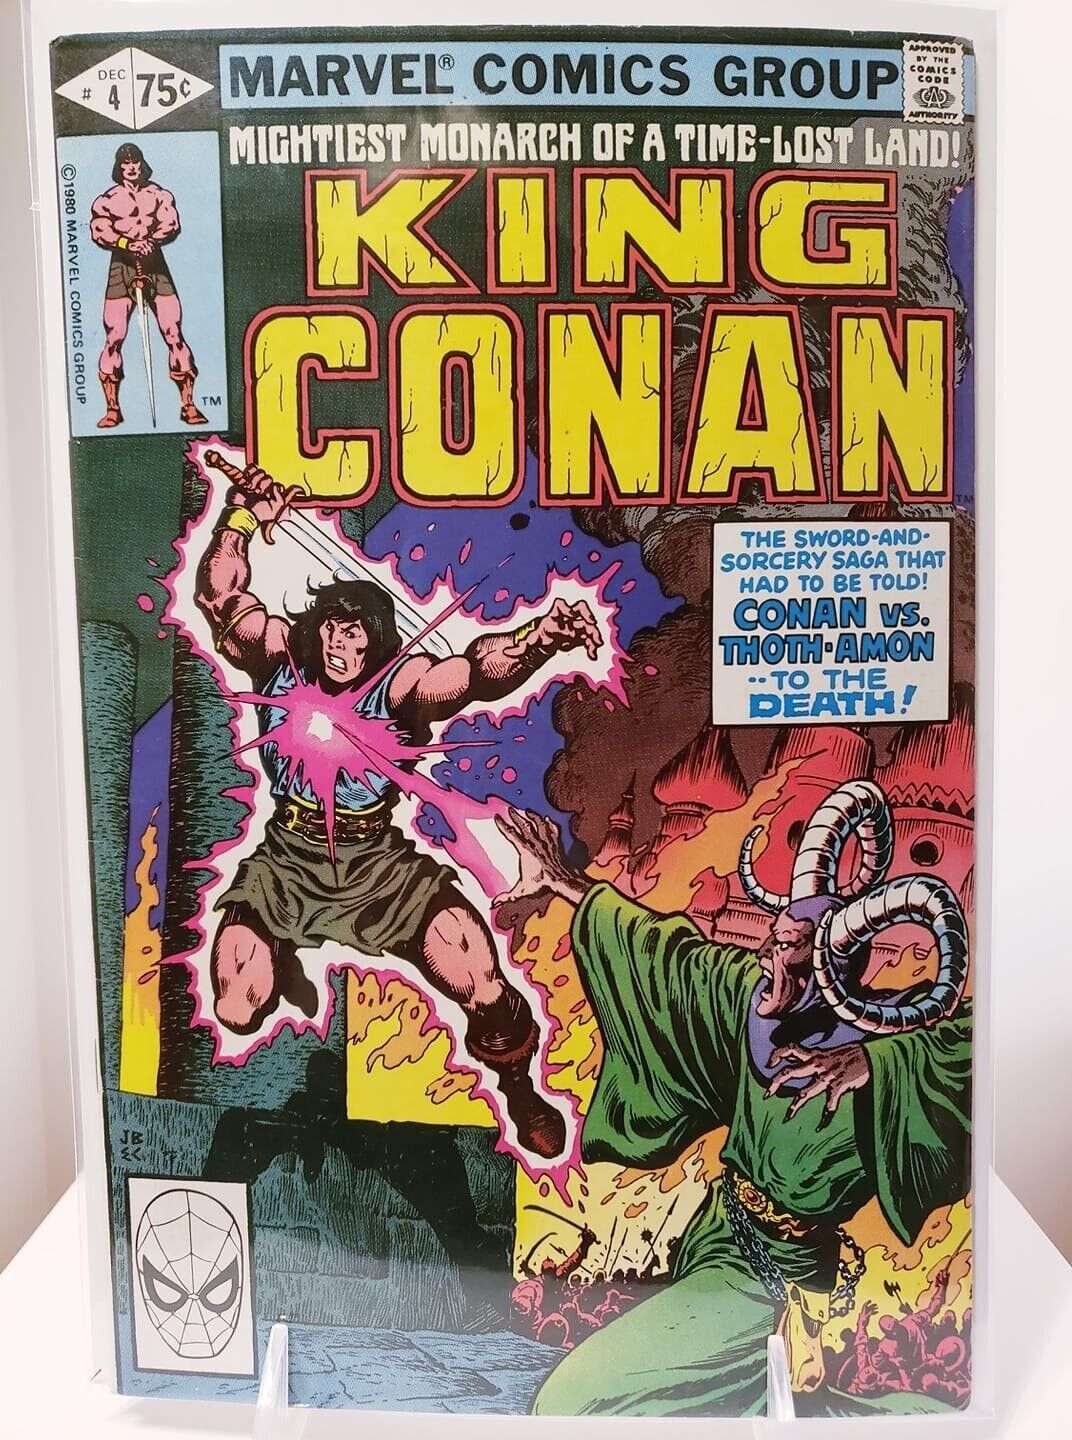 24992: Marvel Comics KING CONAN #4 VF Grade